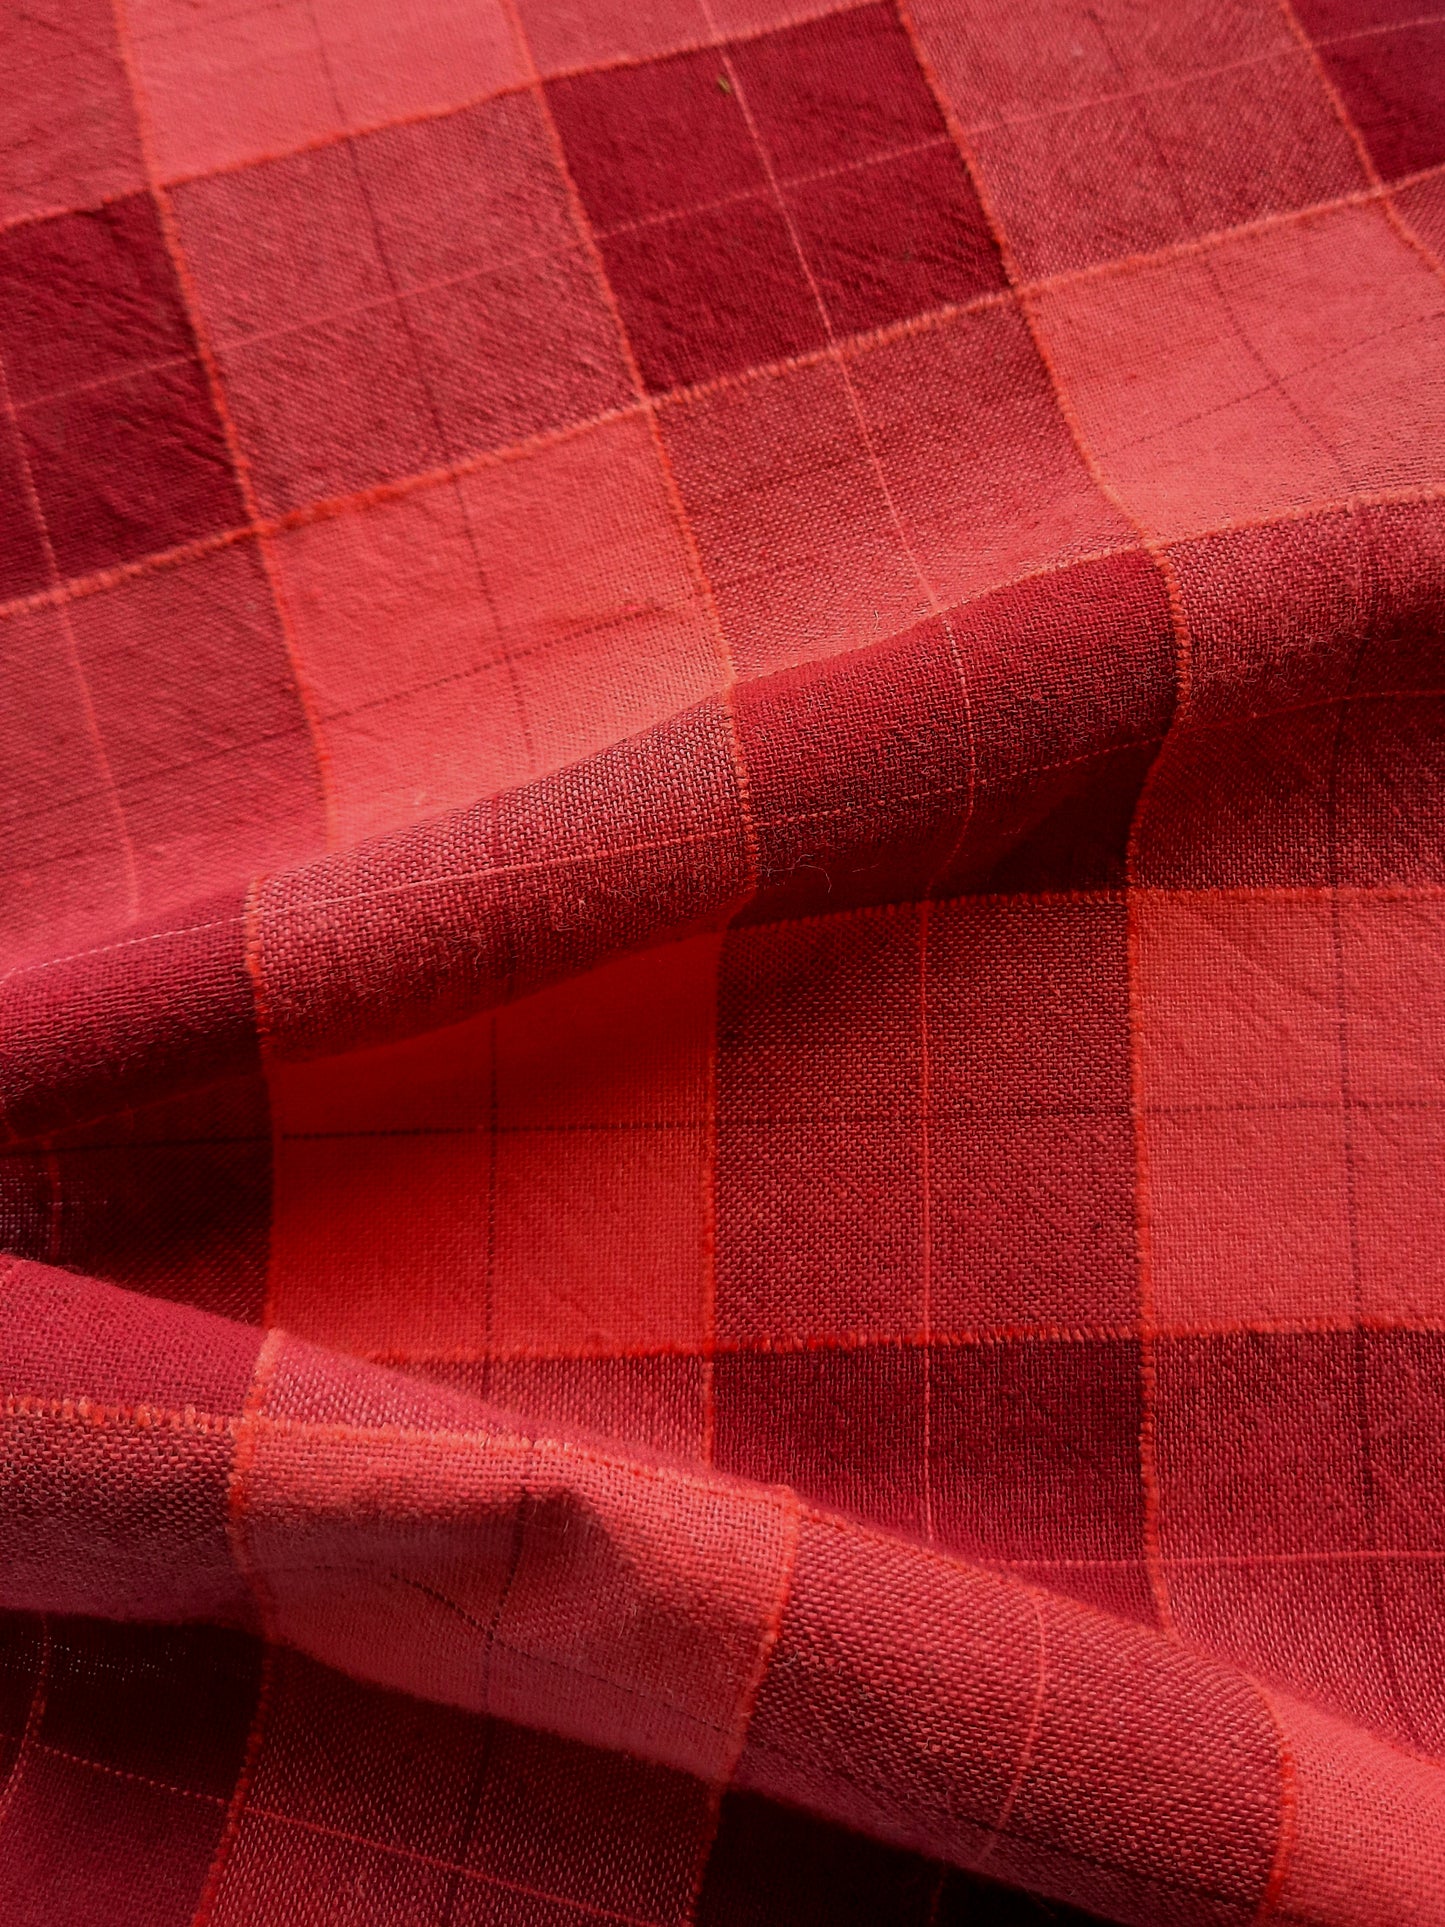 Pre-made Izzy Dress (raspberry check) - size L